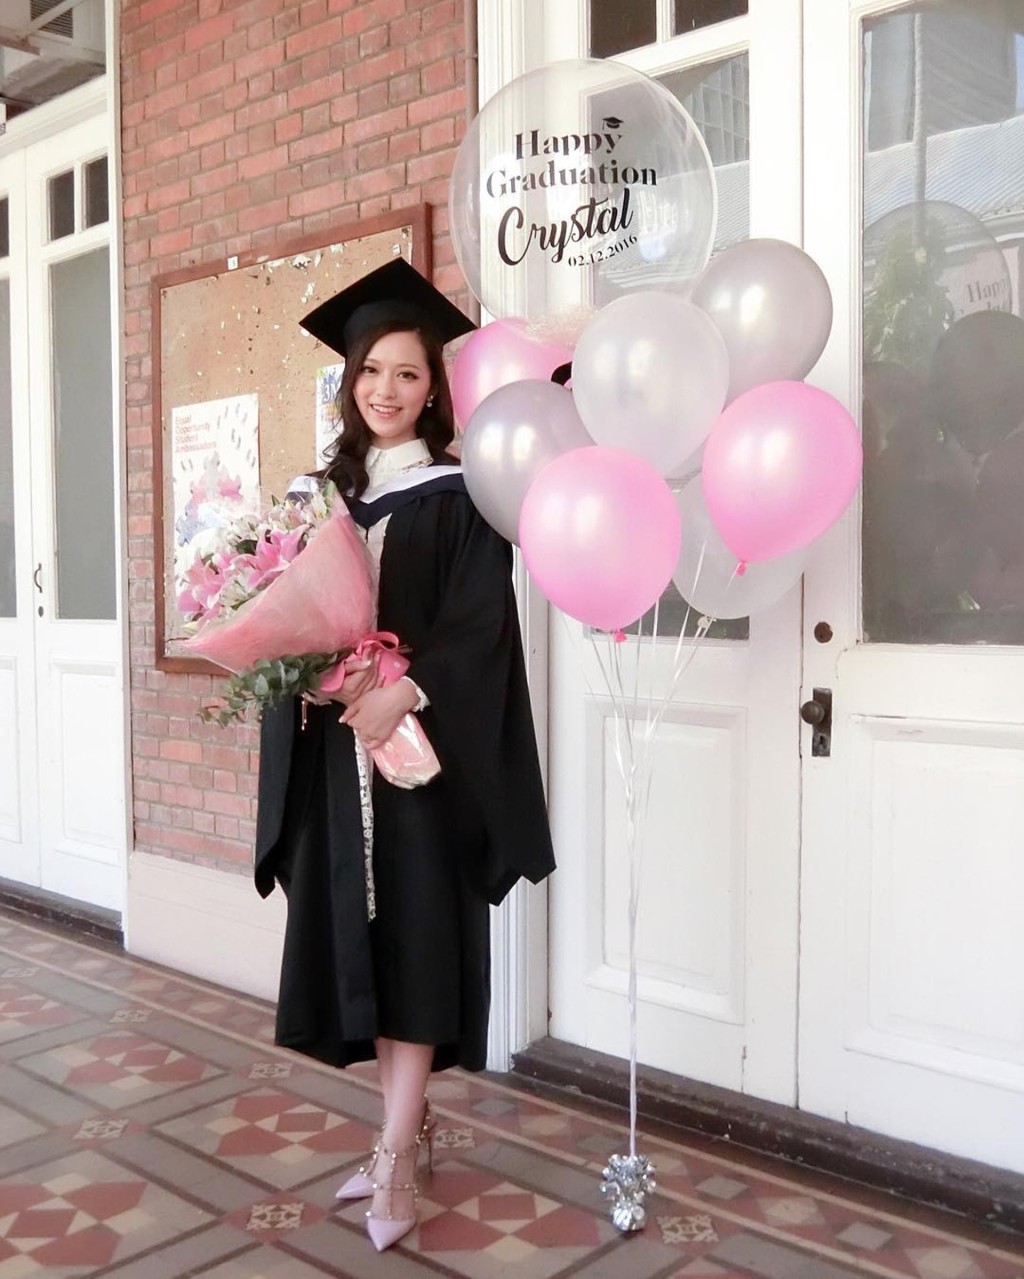 馮盈盈2016年從港大食物及營養學系畢業。